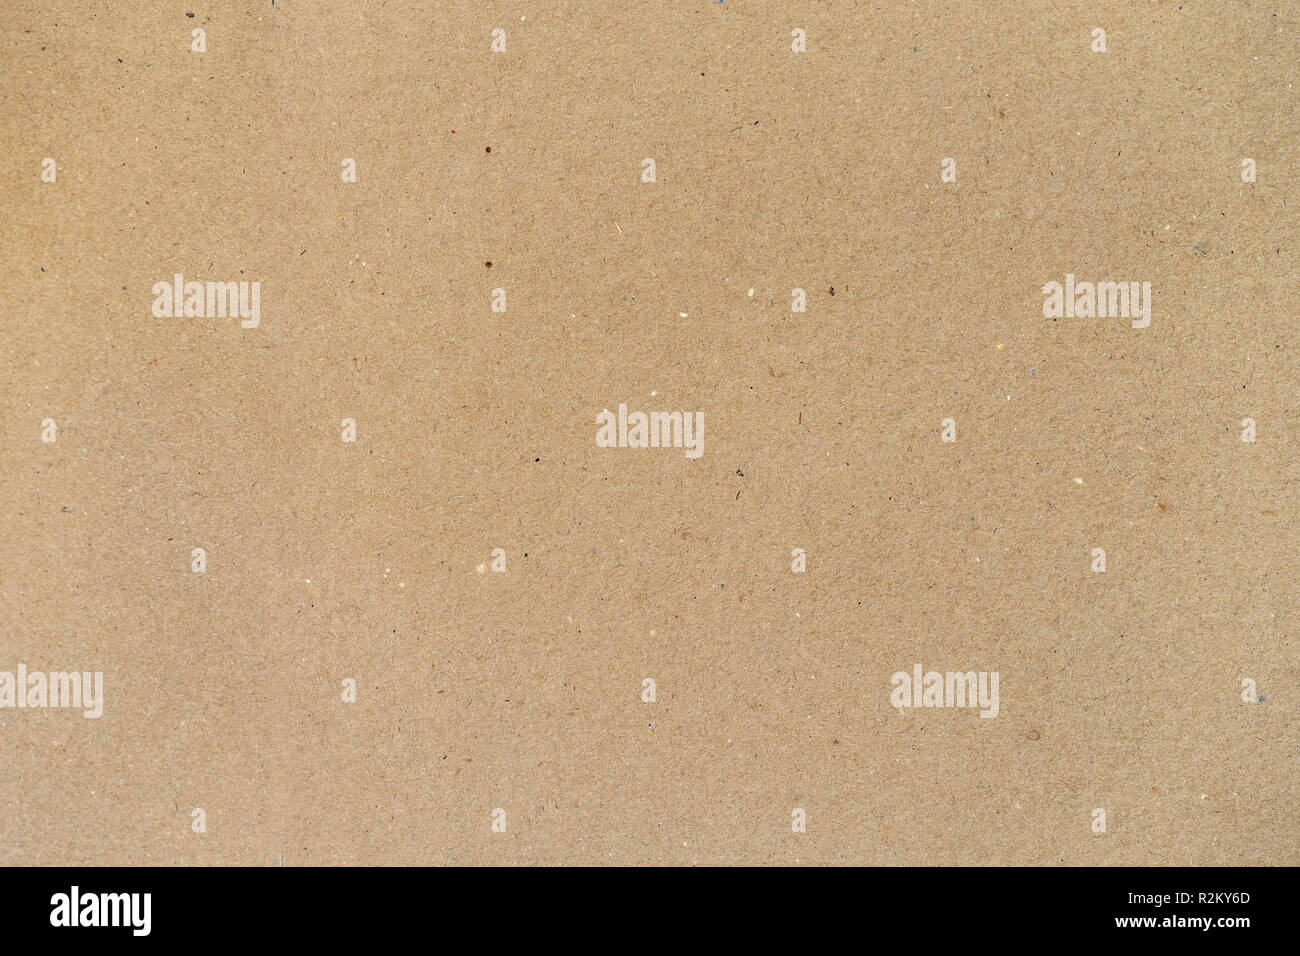 La texture de vieux carton, papier, l'arrière-plan pour la conception with copy space Banque D'Images